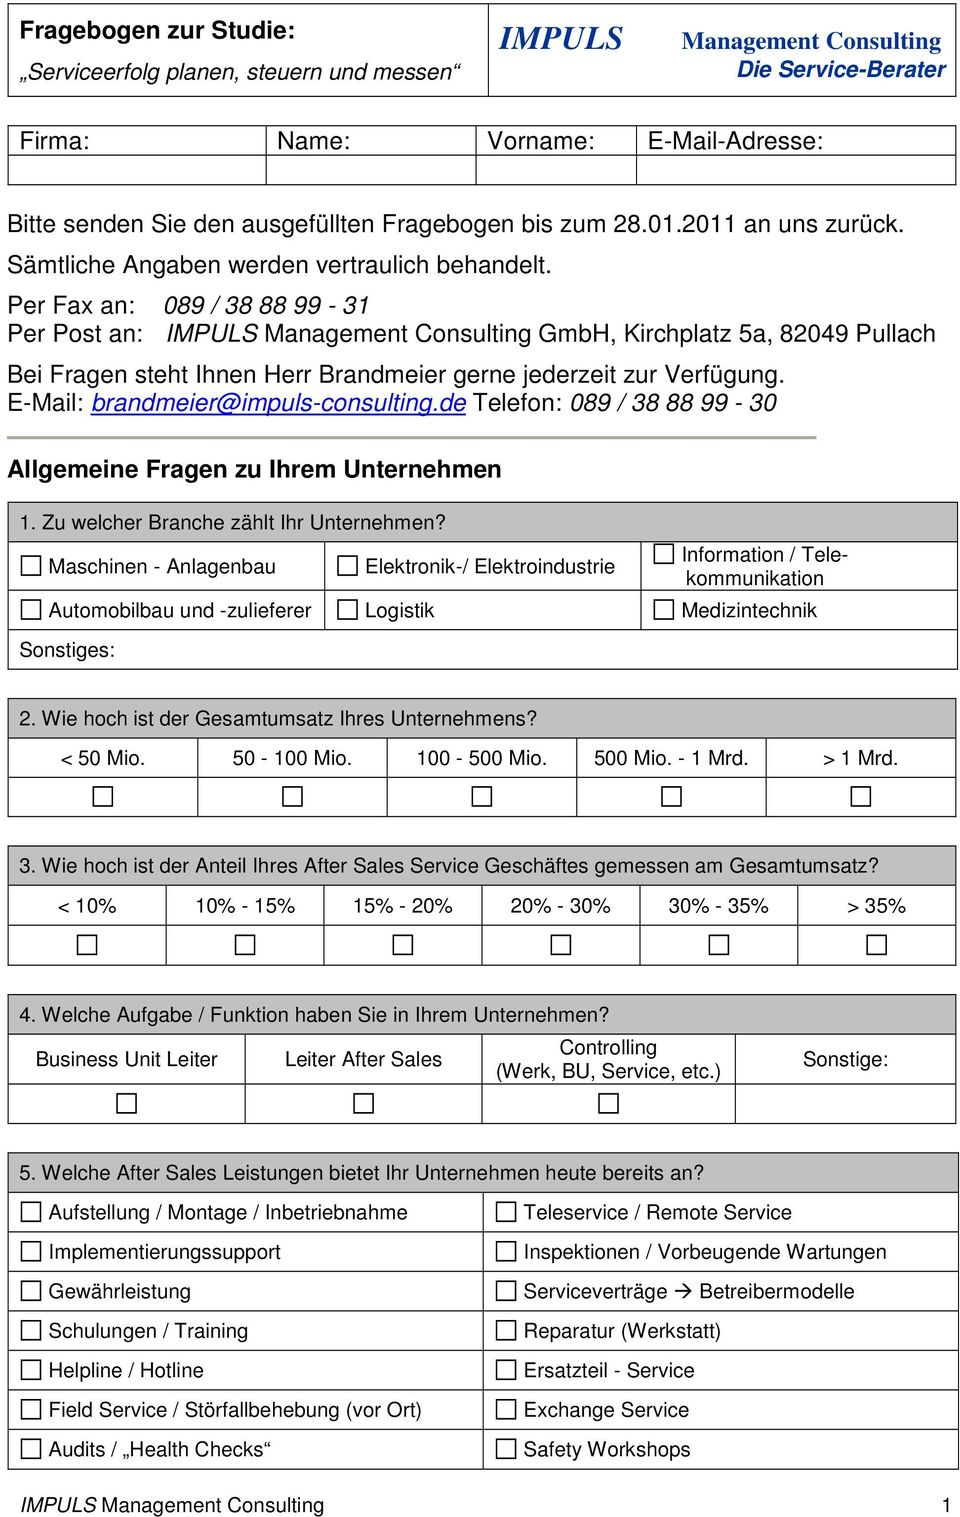 Per Fax an: 089 / 38 88 99-31 Per Post an: IMPULS Management Consulting GmbH, Kirchplatz 5a, 82049 Pullach Bei Fragen steht Ihnen Herr Brandmeier gerne jederzeit zur Verfügung.